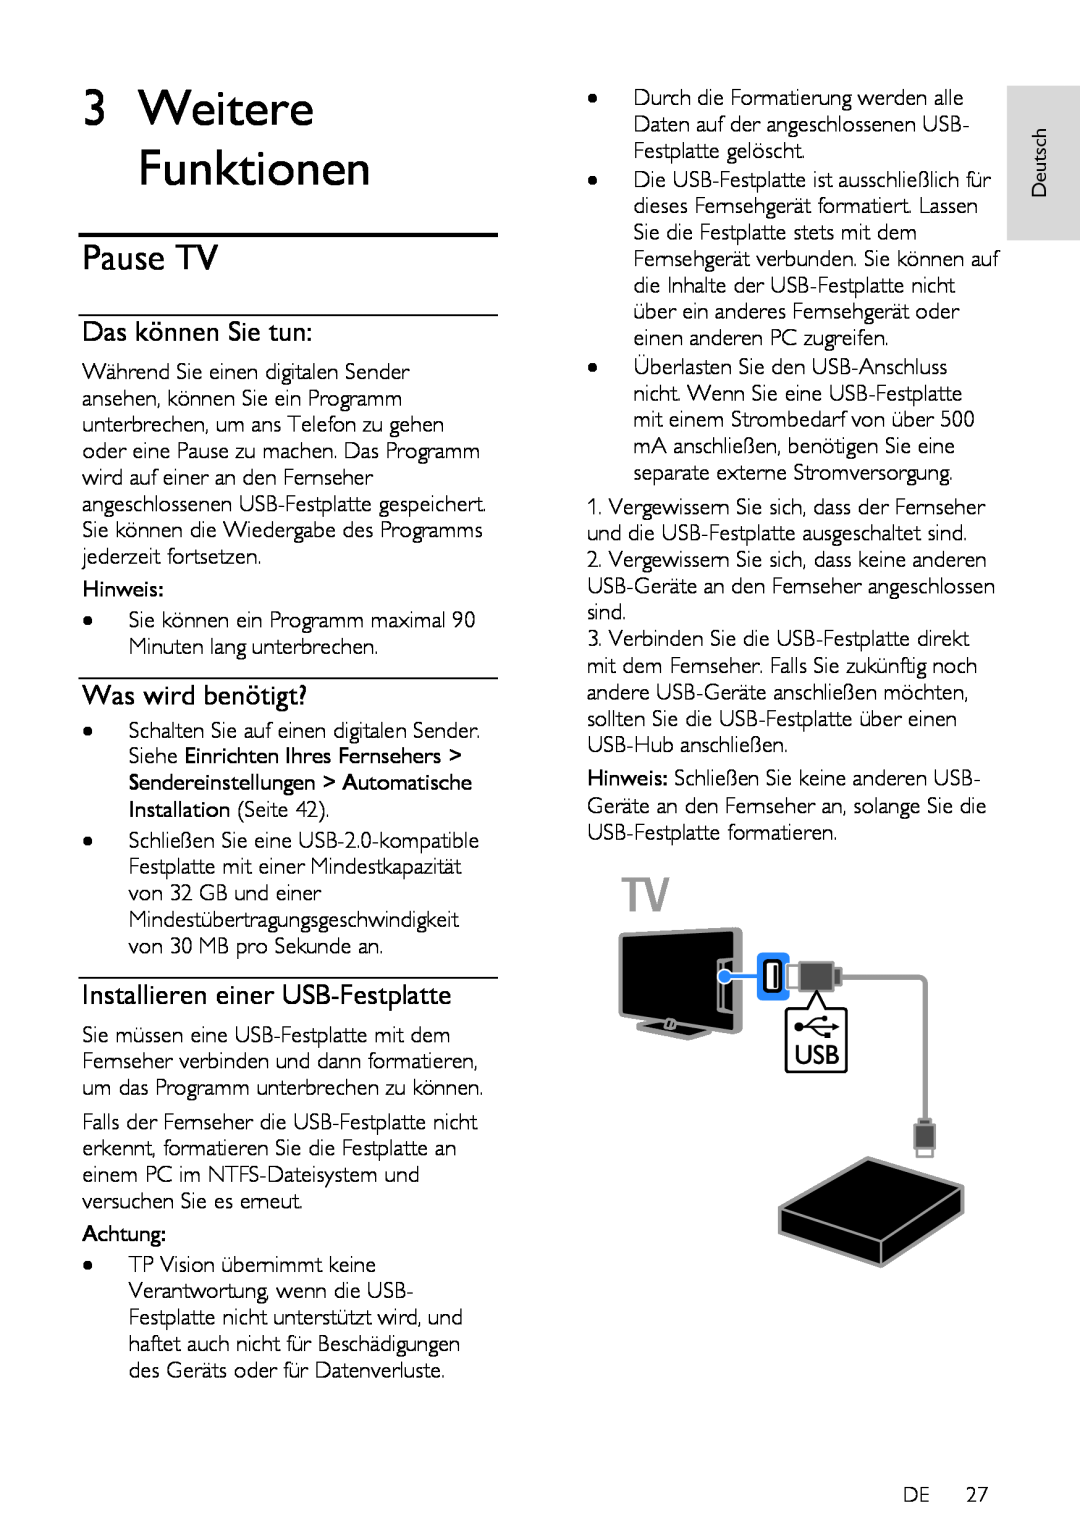 Philips 7H, 12, 60 Pause TV, Installieren einer USB-Festplatte, Weitere Funktionen, Das können Sie tun, Was wird benötigt? 